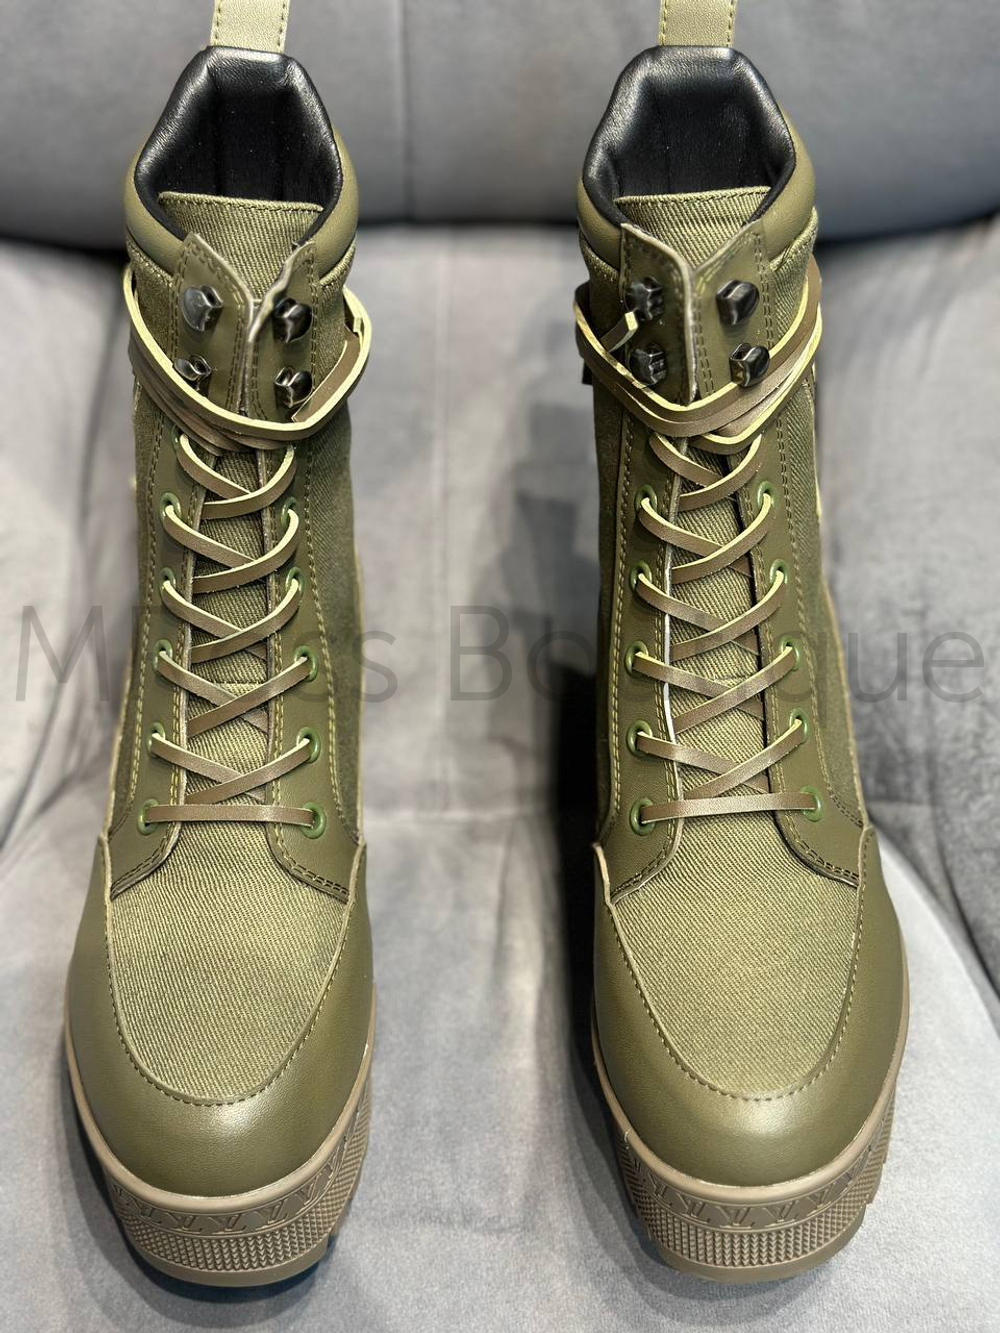 Демисезонные женские ботинки Louis Vuitton desert boot Laureate цвета хаки